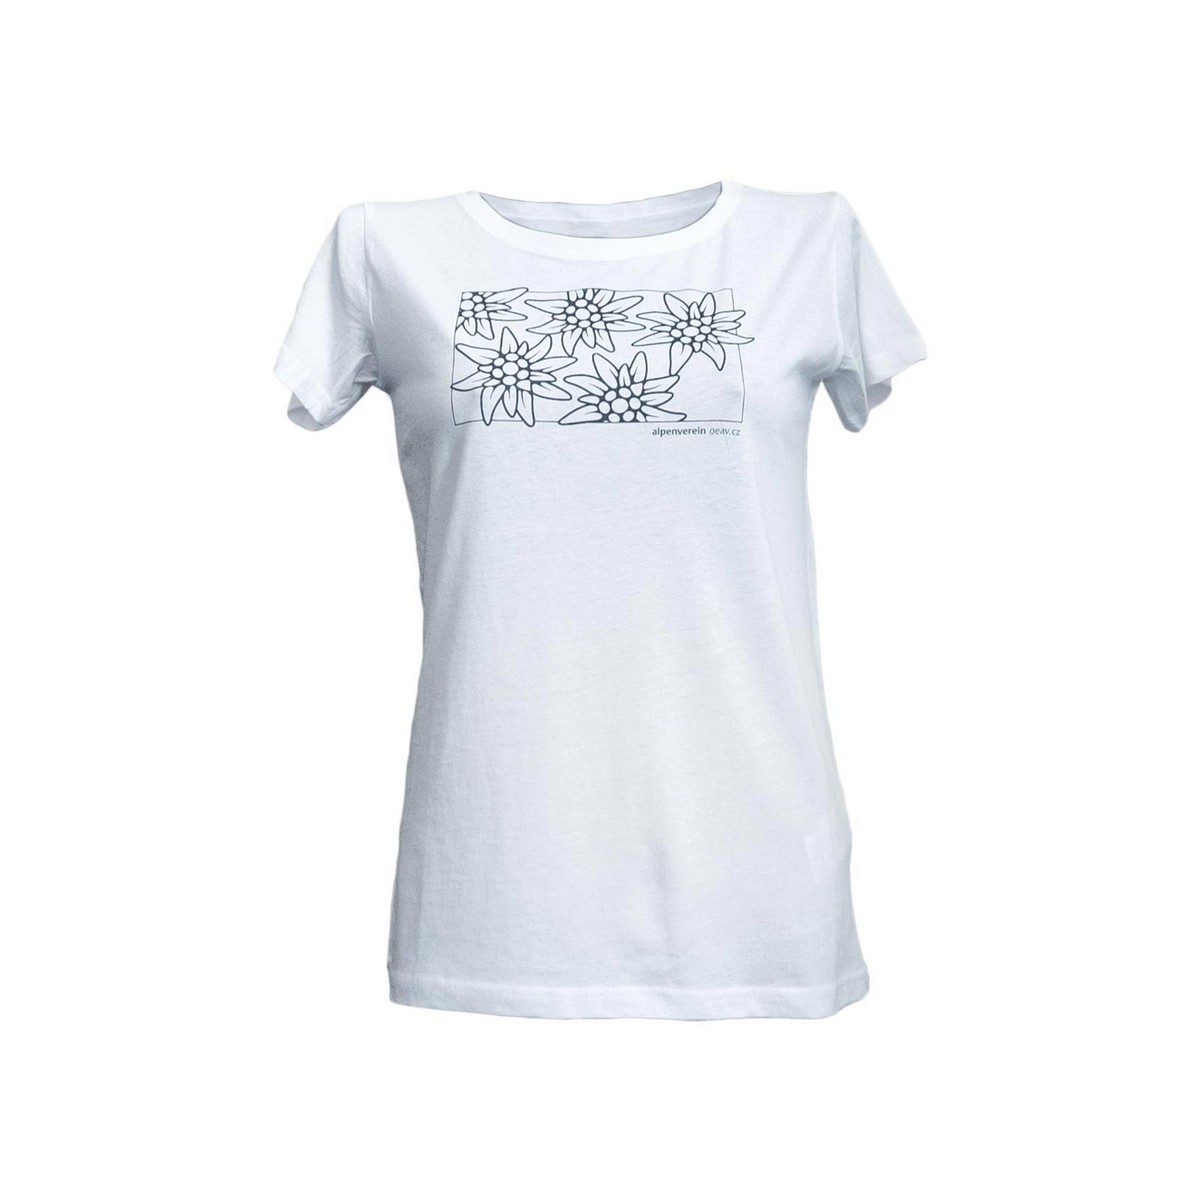 E-shop Alpenverein OEAV.CZ tričko krátký rukáv dámské bílé